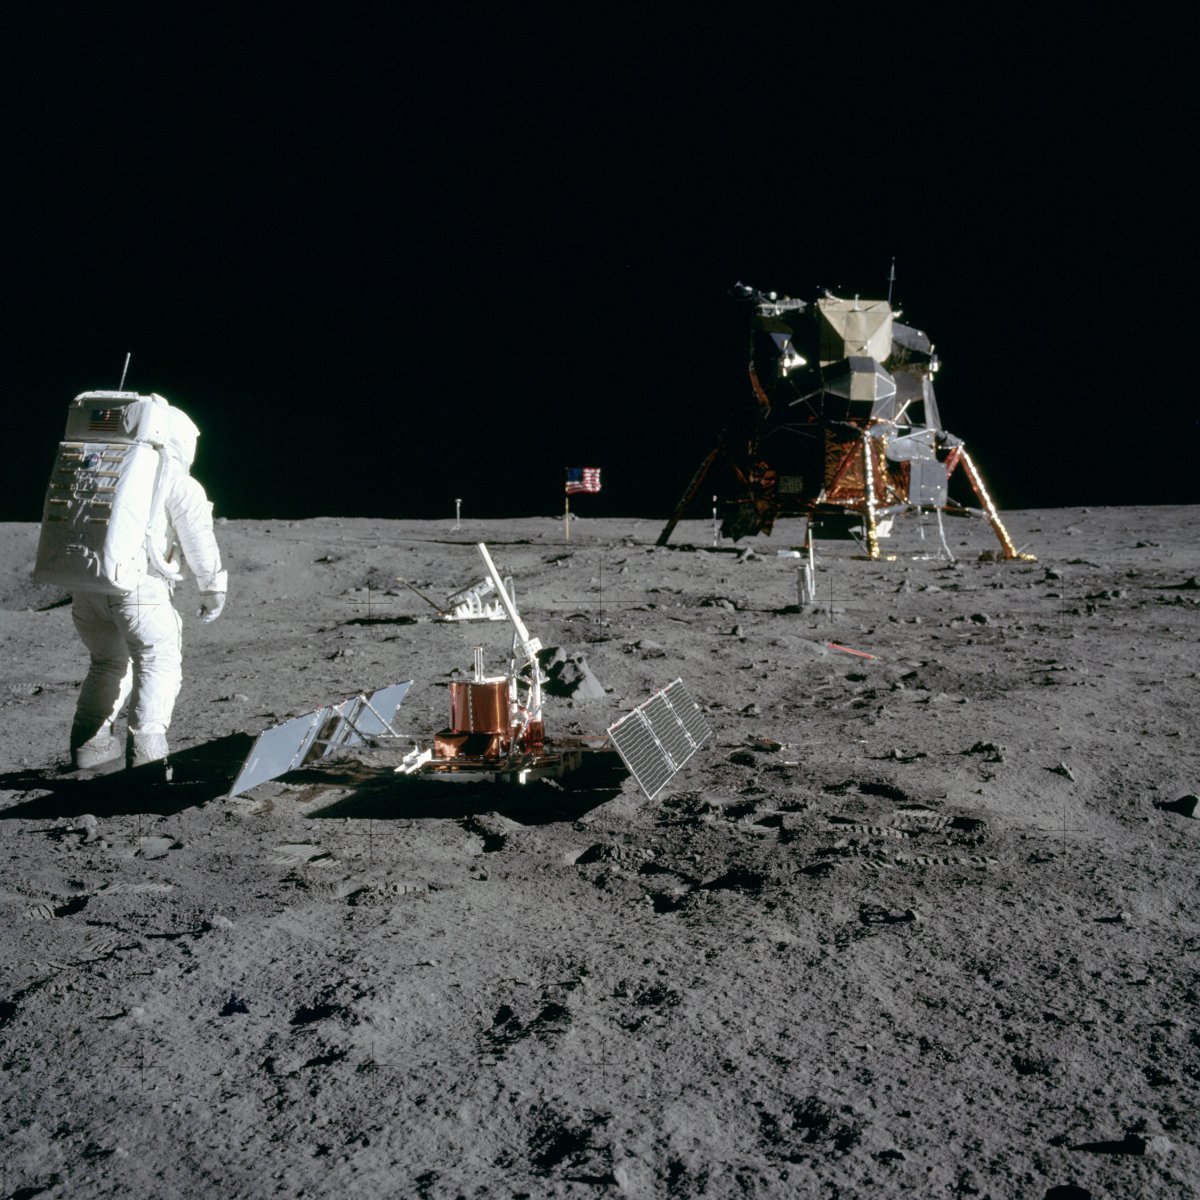 미국은 1969년 7월 20일 아폴로 11호에 인간을 태워 달에 착륙시키는 데 성공했다. 미국항공우주국(NASA)